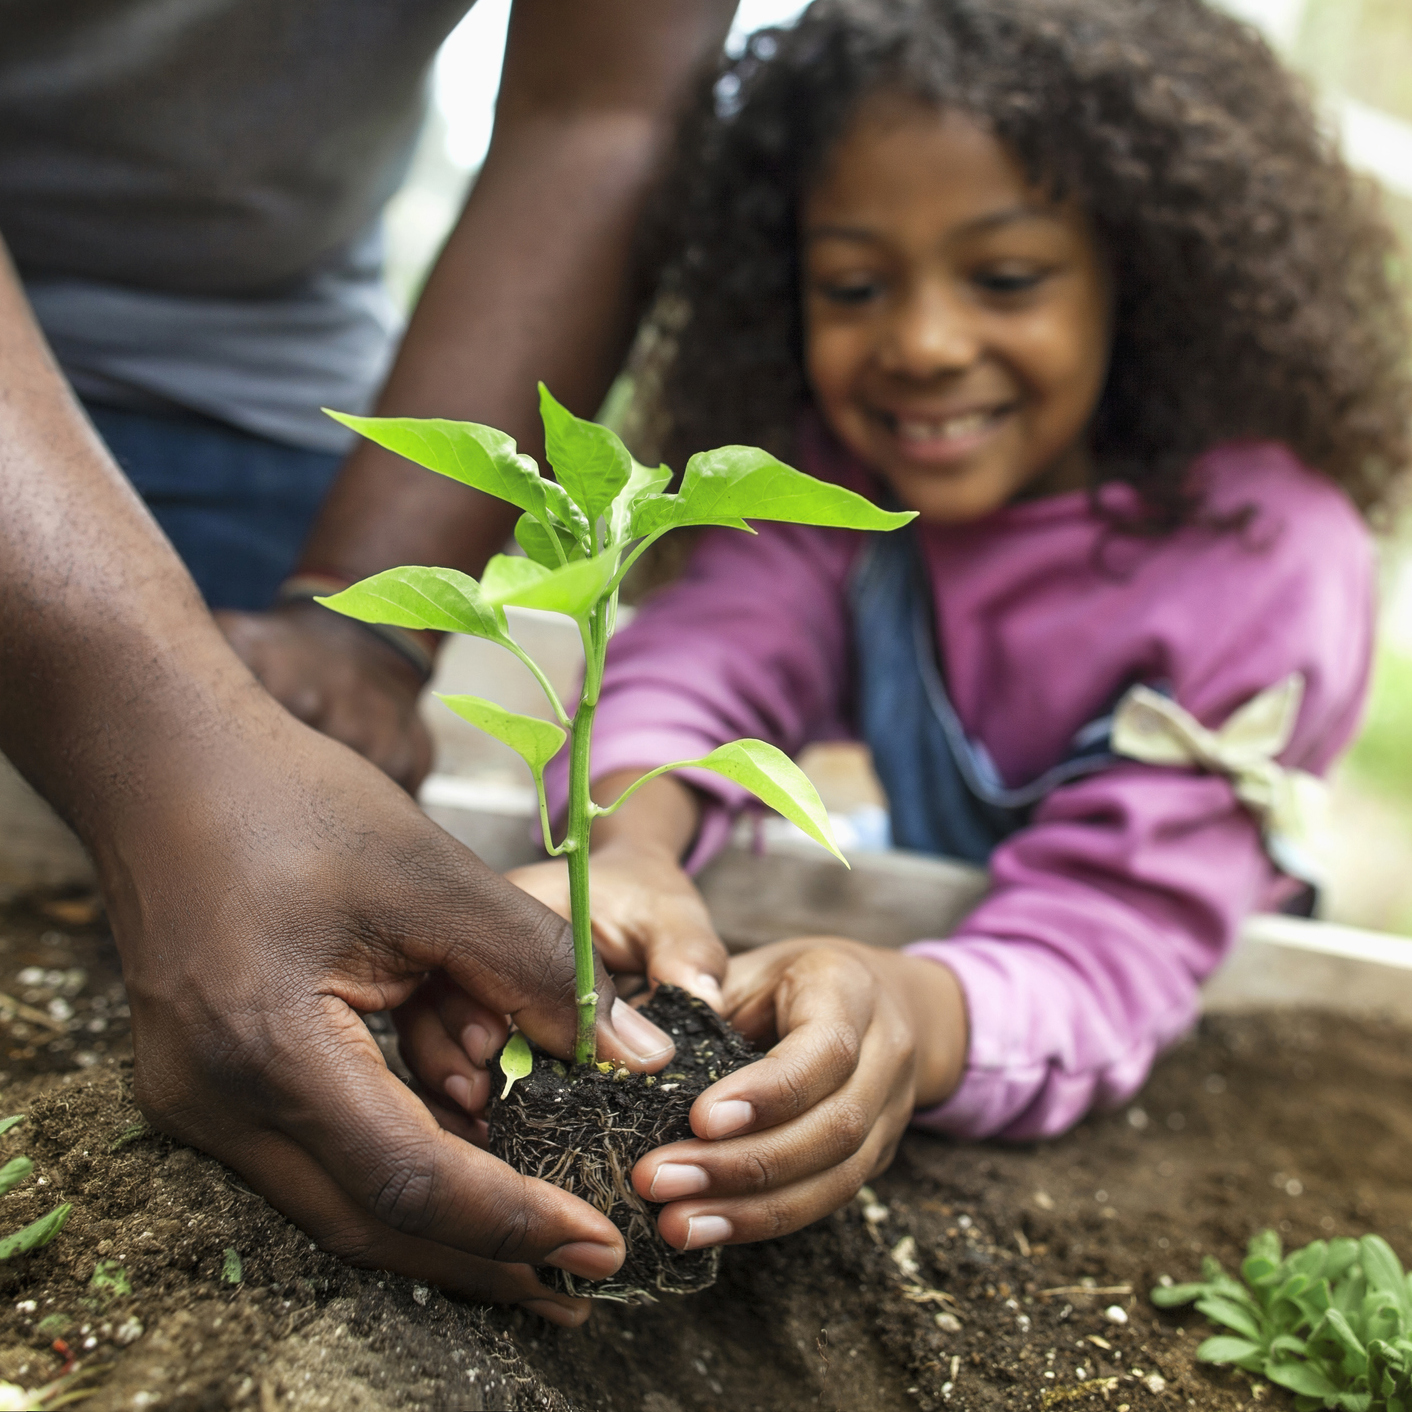 Child planting a plant with parent's assistance